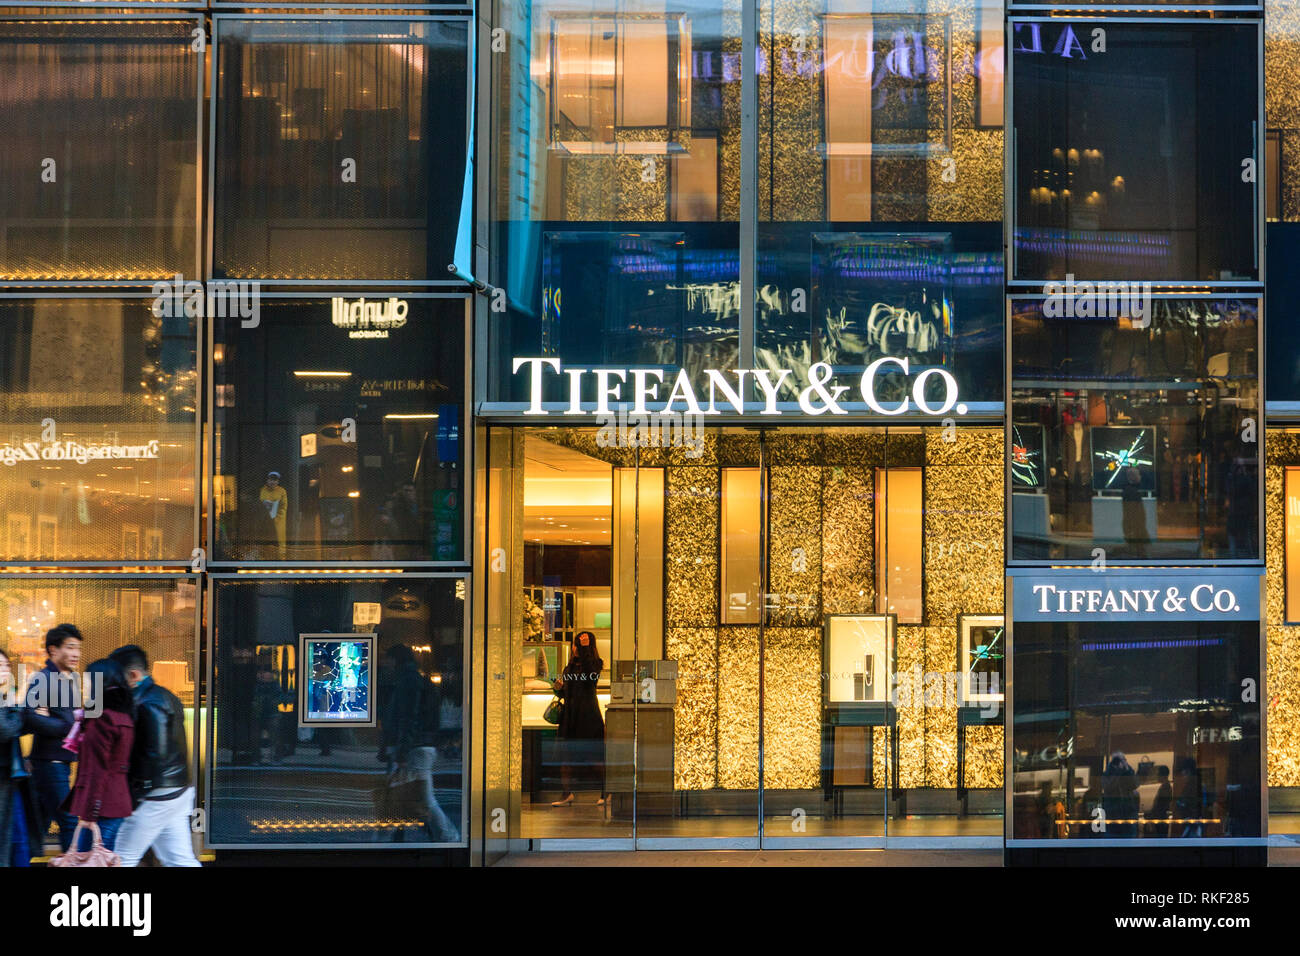 Tiffany Store Front Banque d'image et photos - Alamy